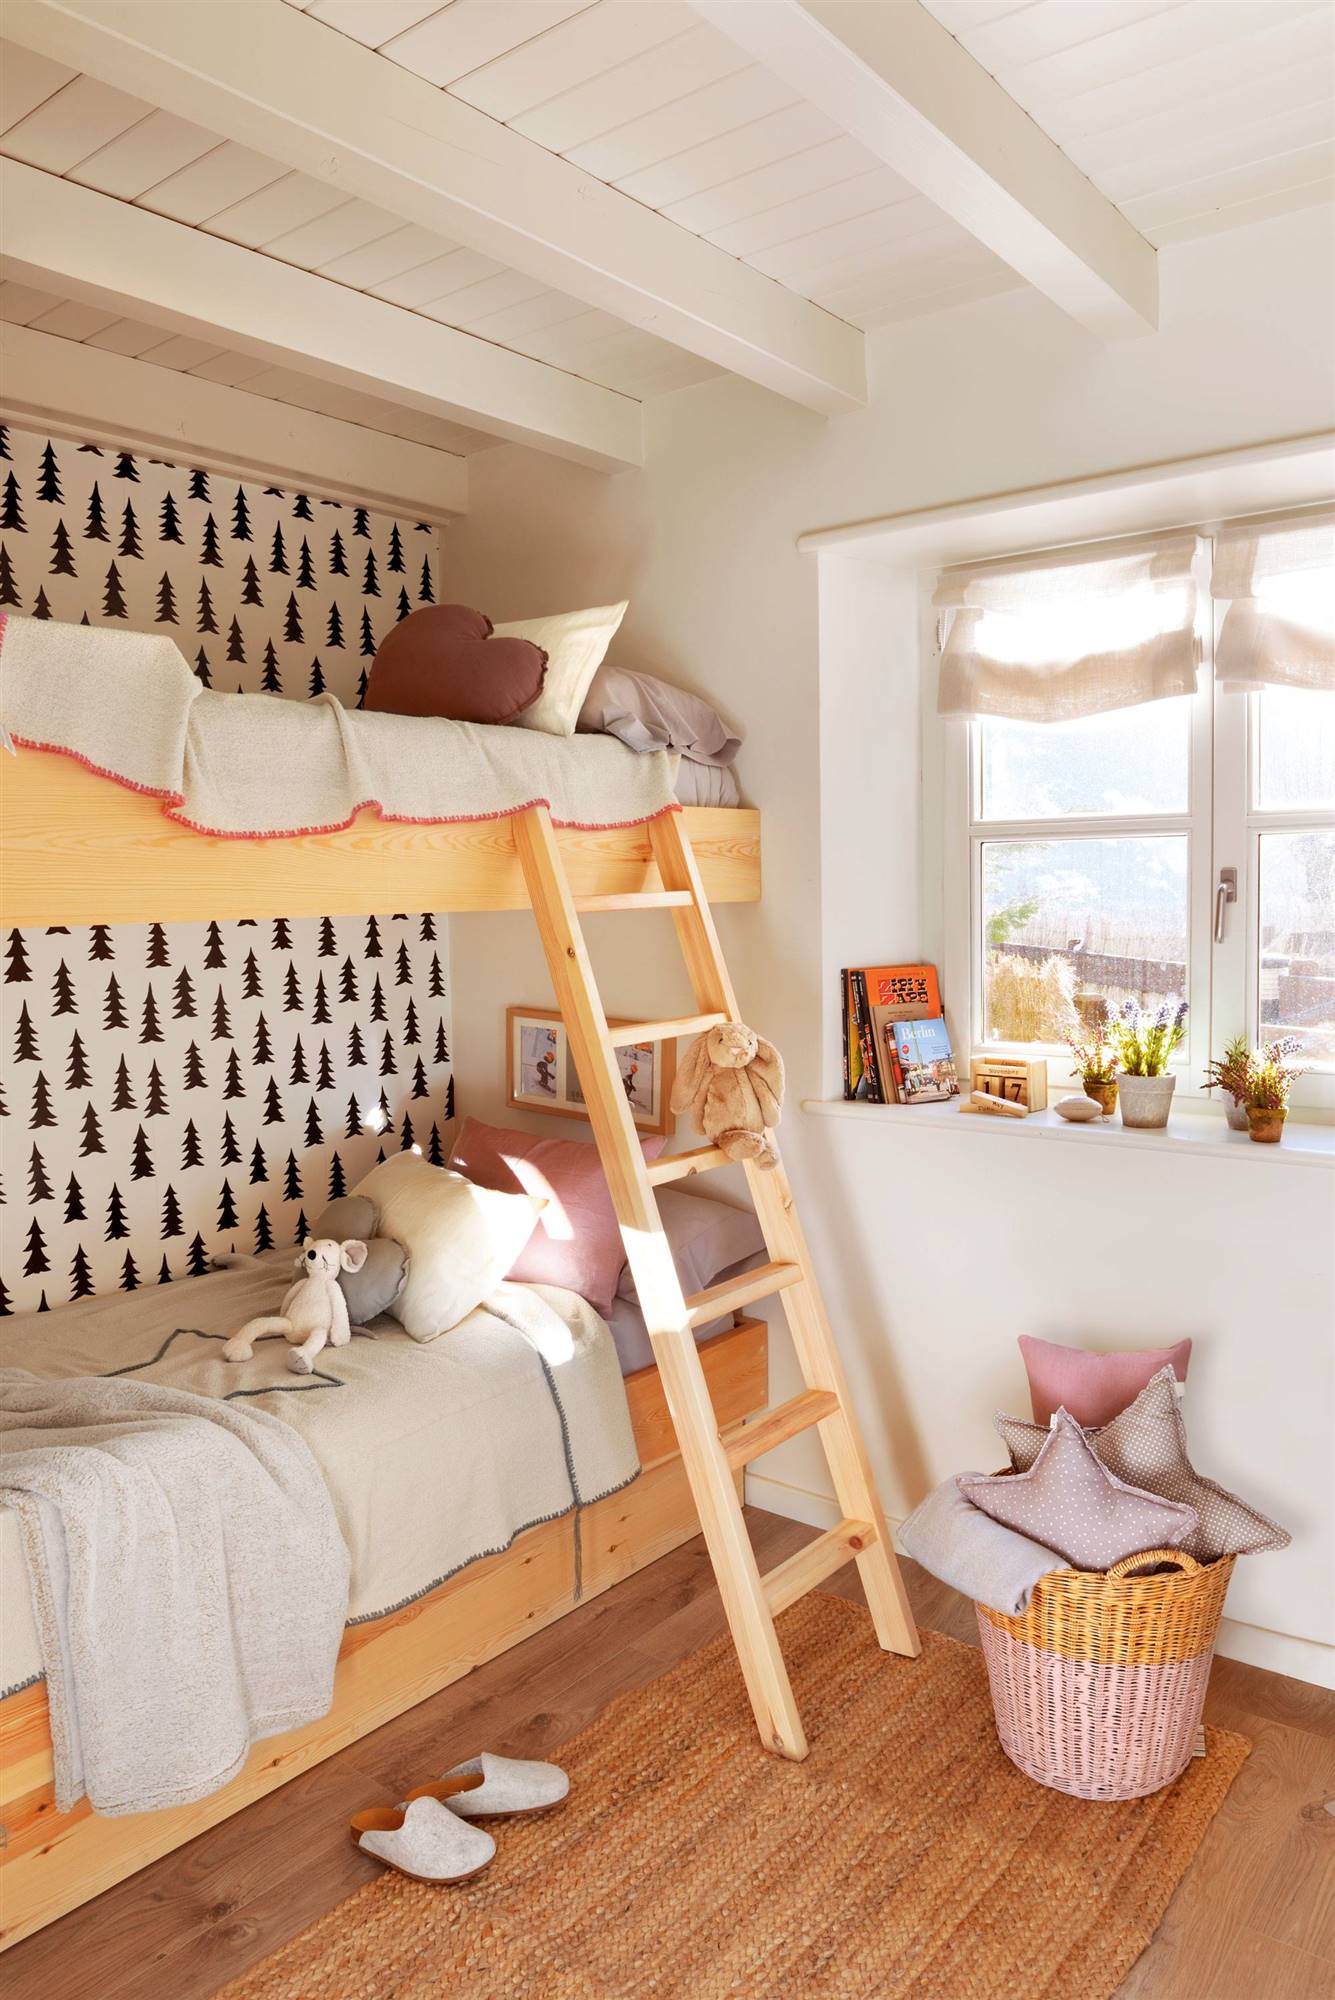 Dormitorio infantil con litera, papel pintado, cesta de mimbre y cojines.